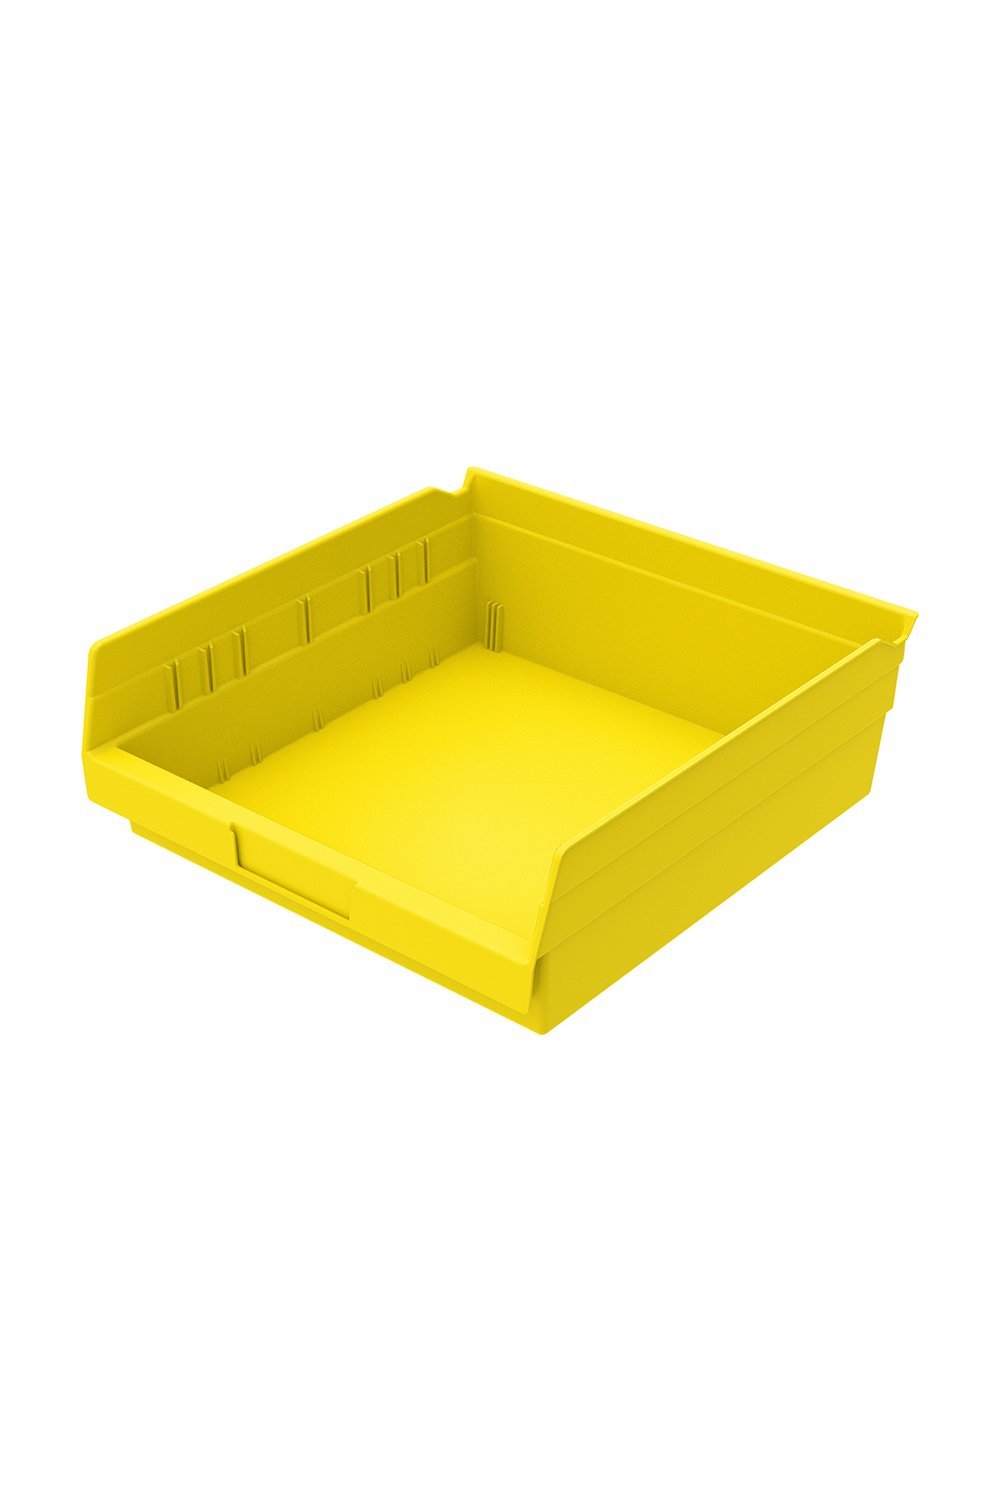 Shelf Bin for 12"D Shelves Bins & Containers Acart 11-5/8'' x 11-1/8'' x 4'' Yellow 